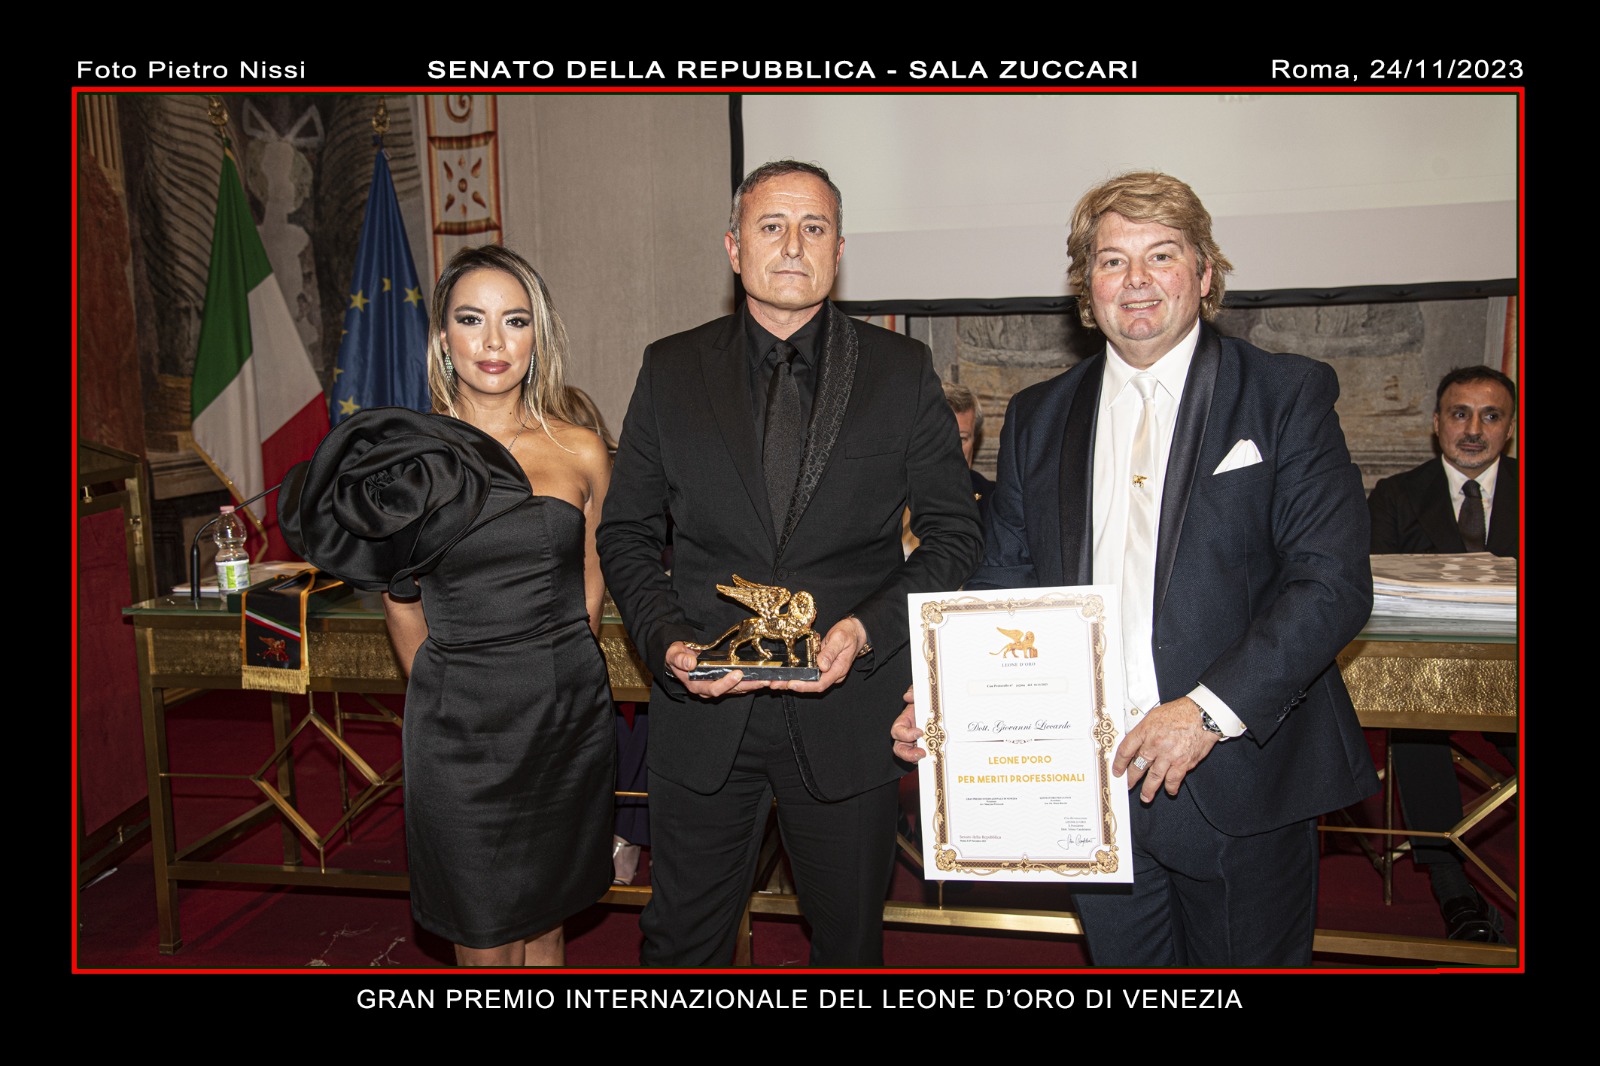 Giovanni Liccardo, fundador y CEO de Lever Touch, galardonado con el Leone d’Oro de Venecia por su trayectoria empresarial